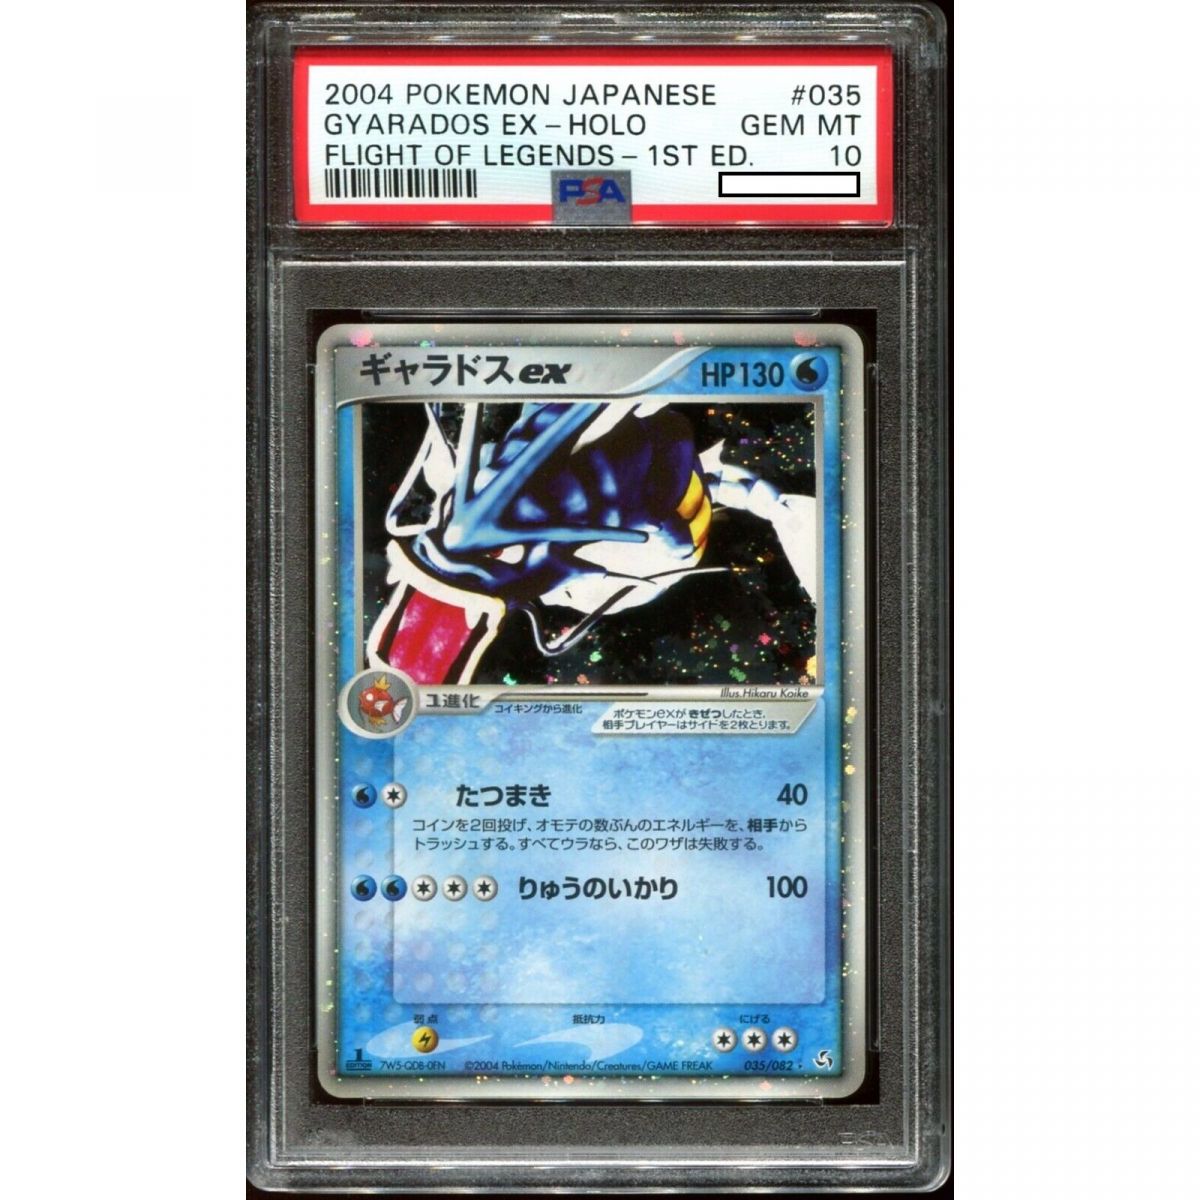 Pokémon - Carte Gradée - Gyarados Ex Flight Of Legends Japonais 2004 1st Edition [PSA 10 - Gem Mint]